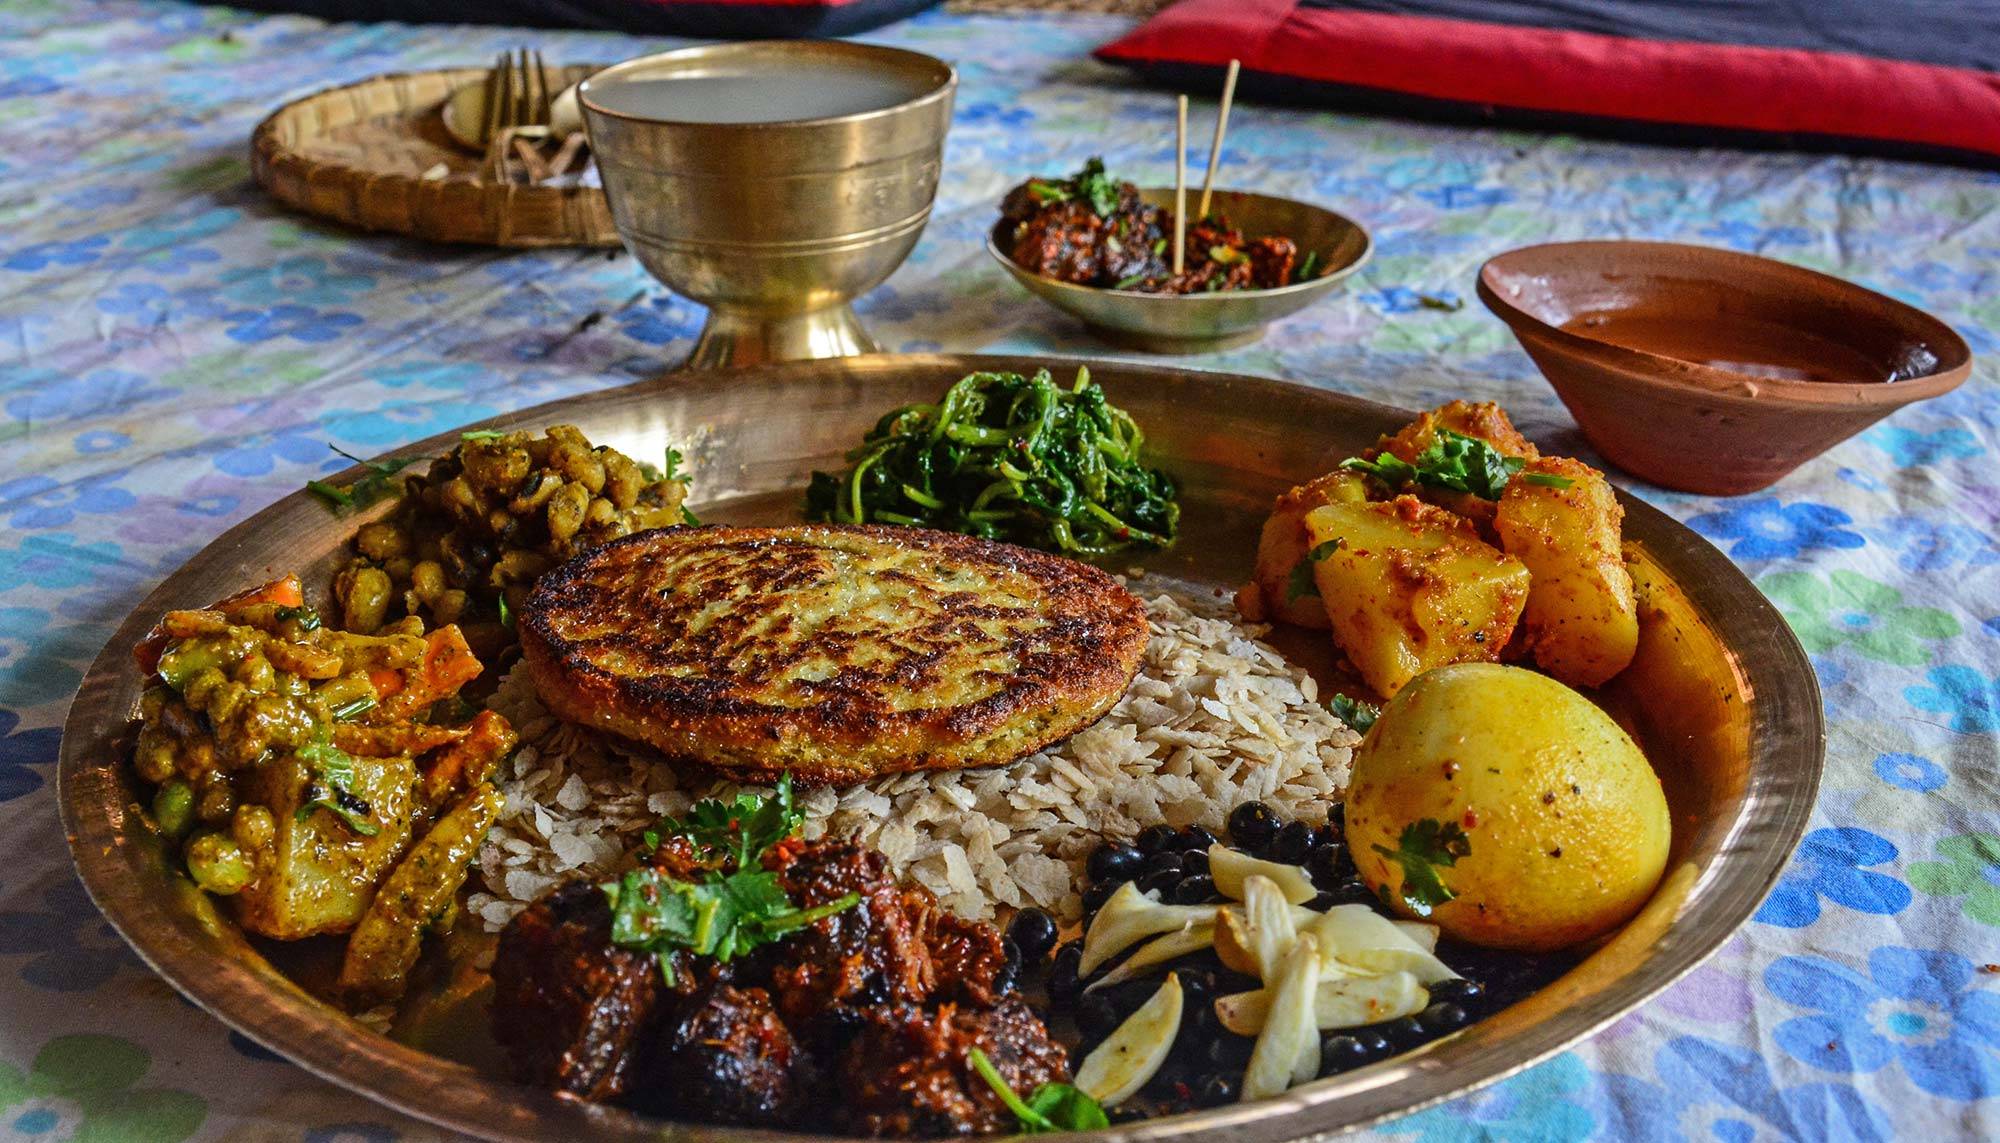 尼泊尔美食图片大全图片